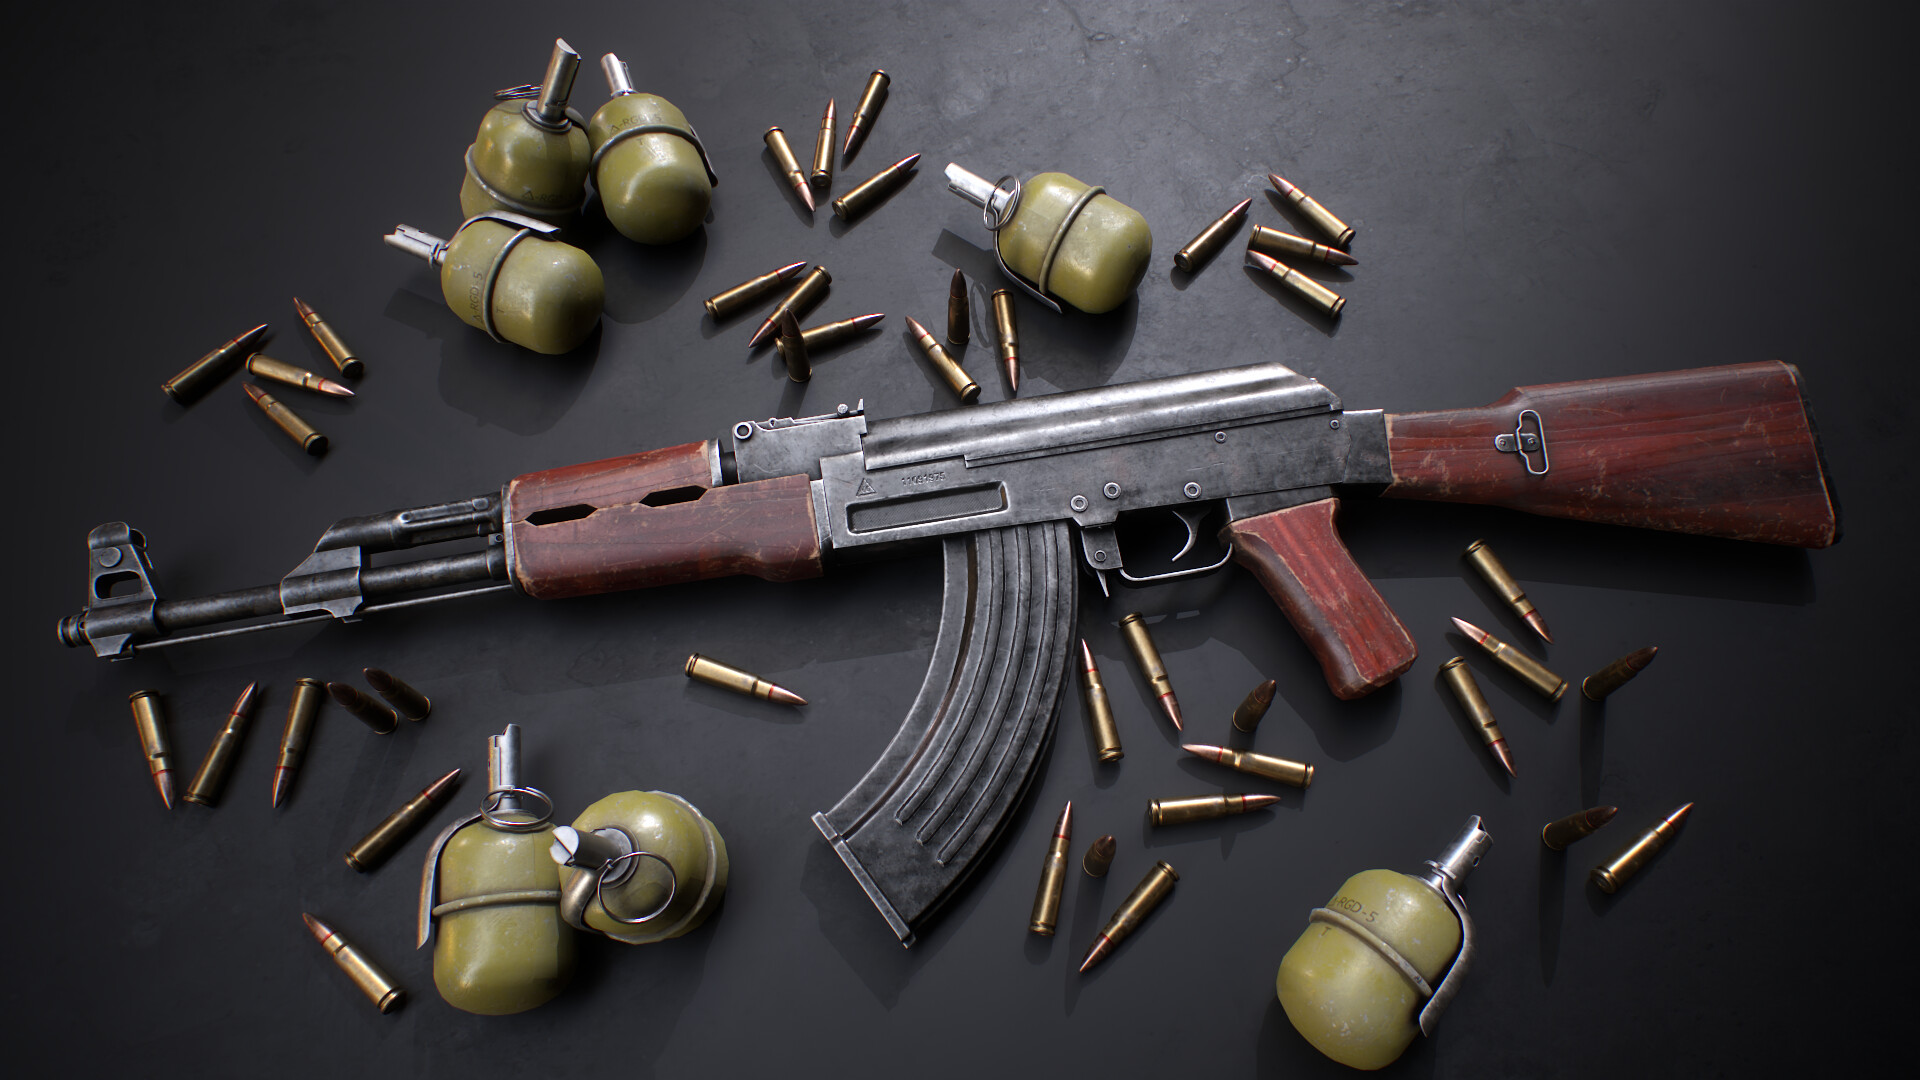 ArtStation - Avtomat Kalashnikova (AK-47)